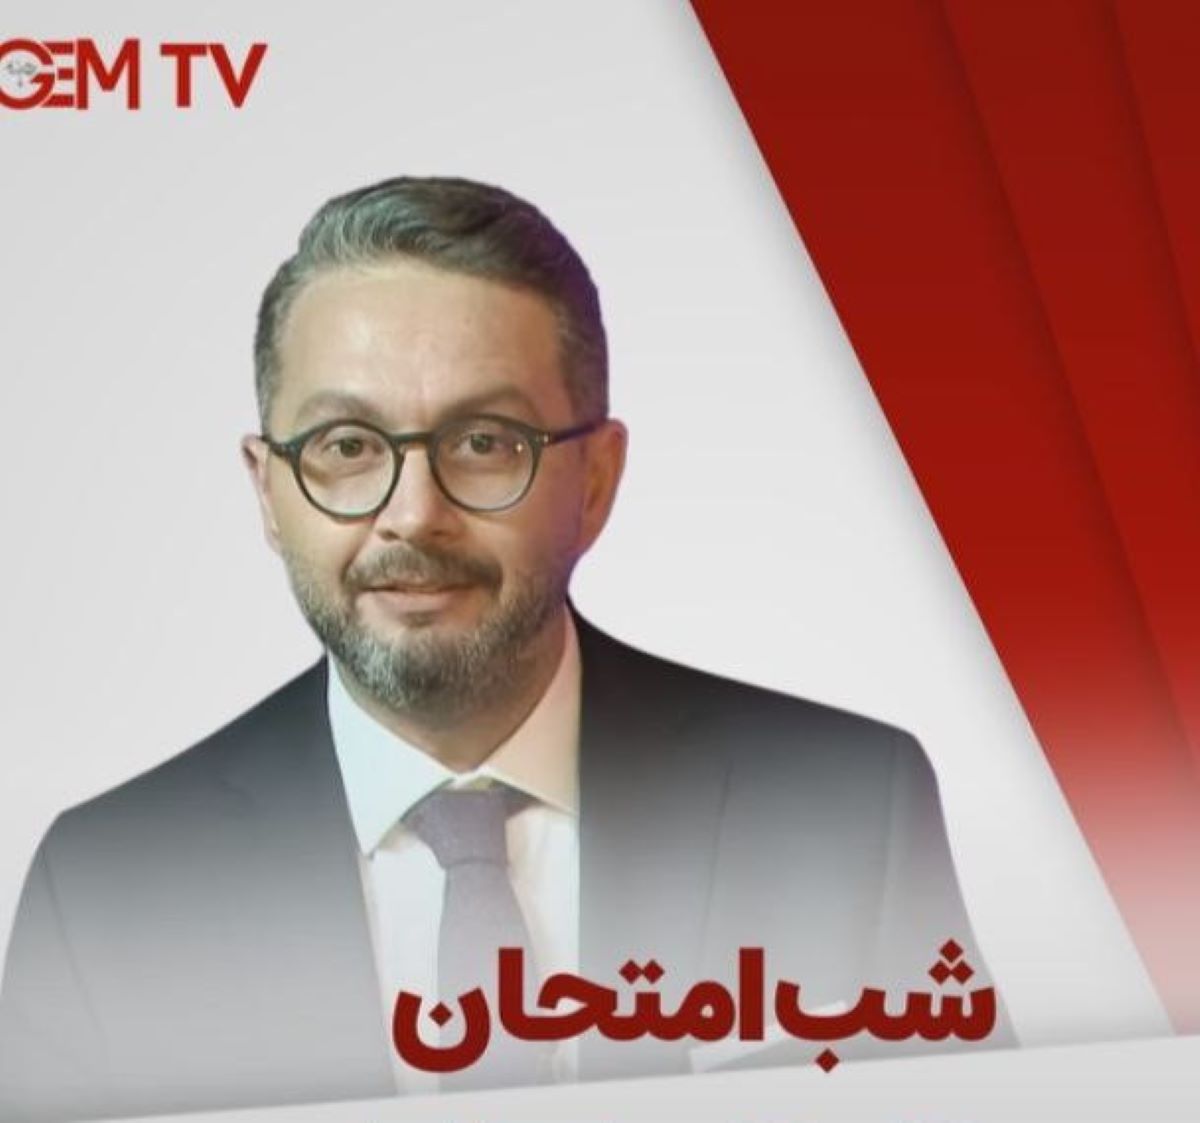 زمان پخش شب امتحان - Ibrahim selim ile Bu Gece از شبکه جم تی وی + بیوگرافی مجری